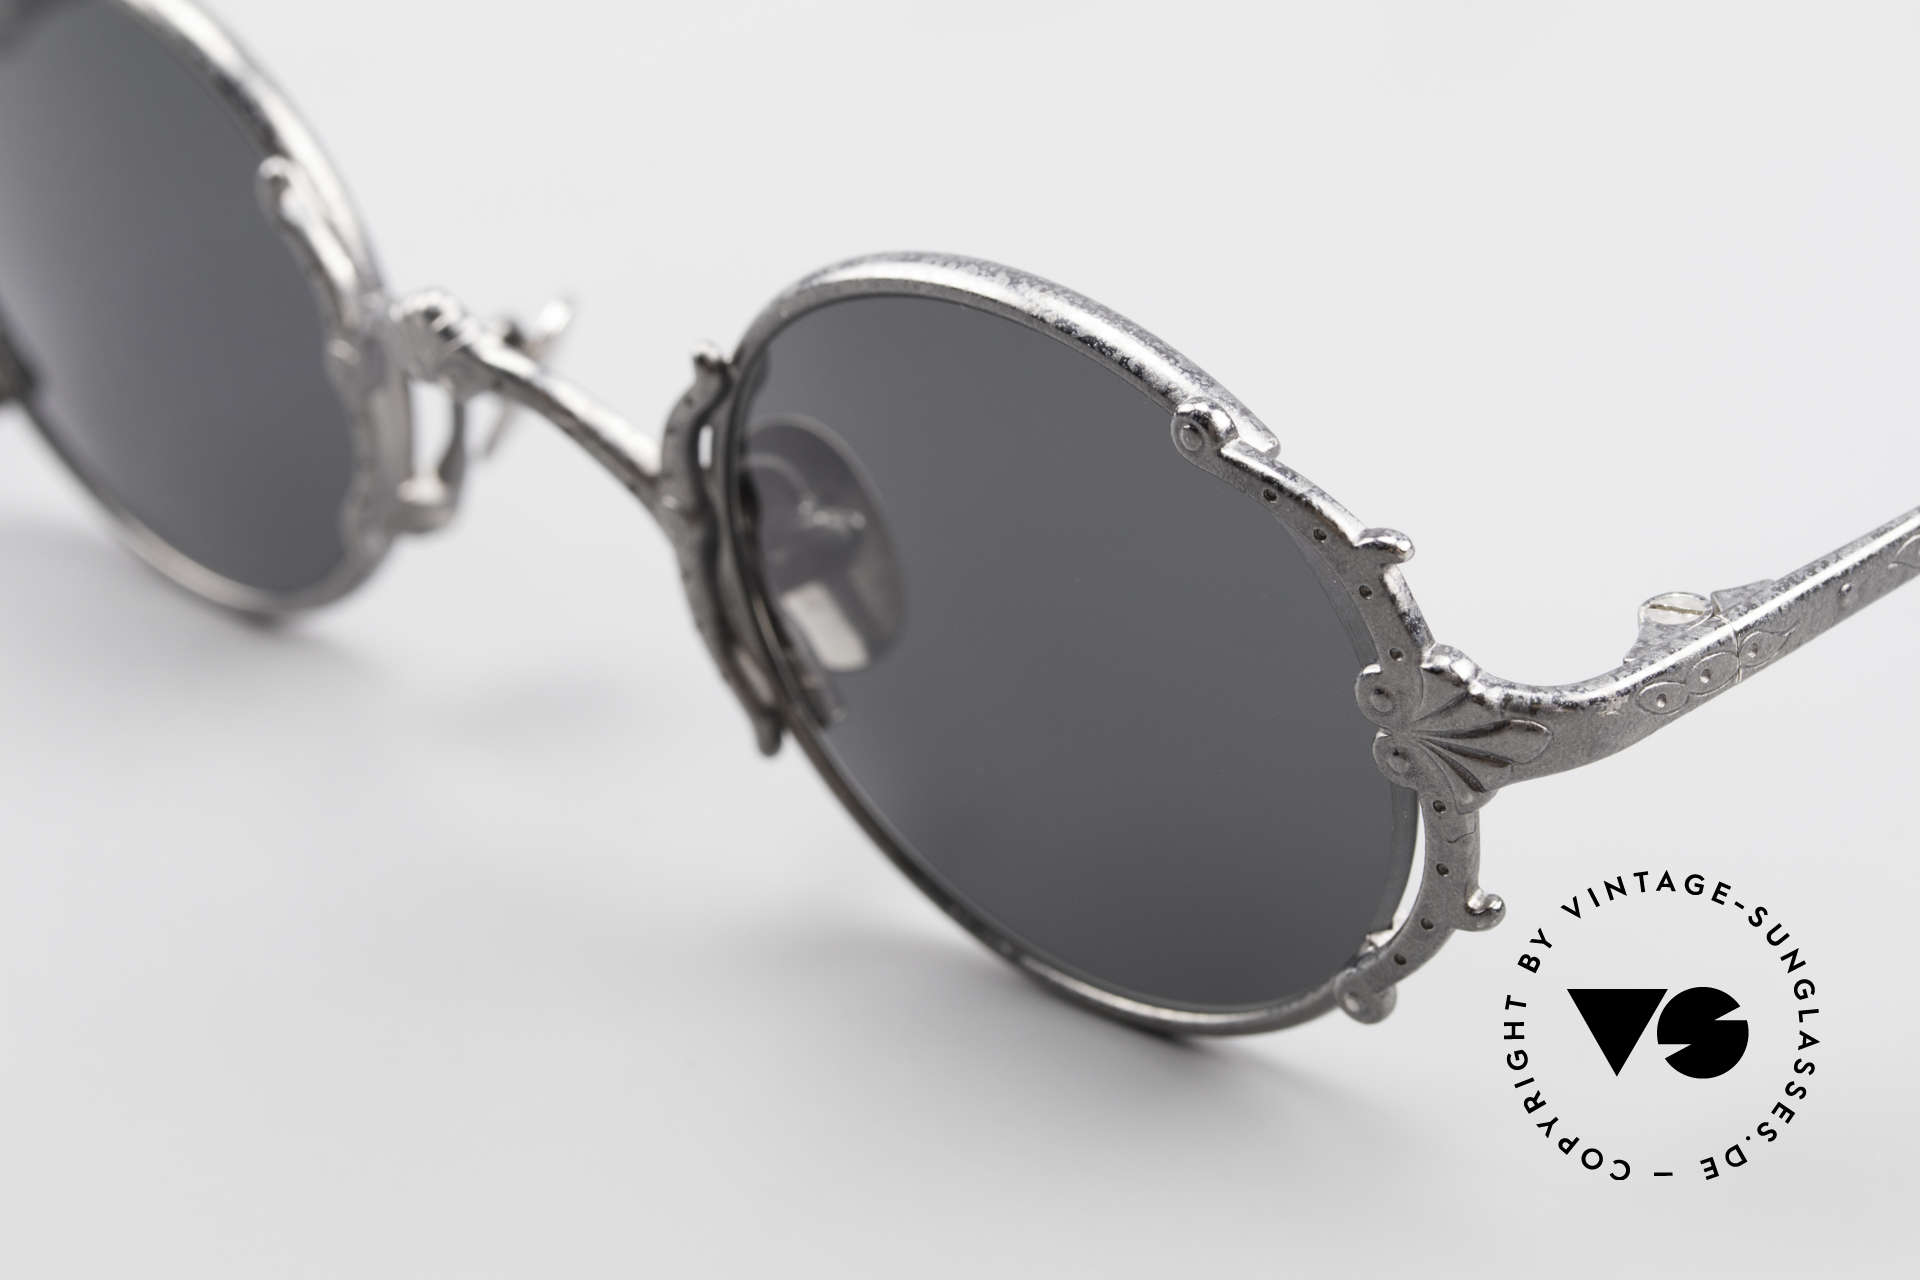 Sunglasses Jean Paul Gaultier 56-4176 Baroque Sunglasses Louis XIV | Vintage Sunglasses